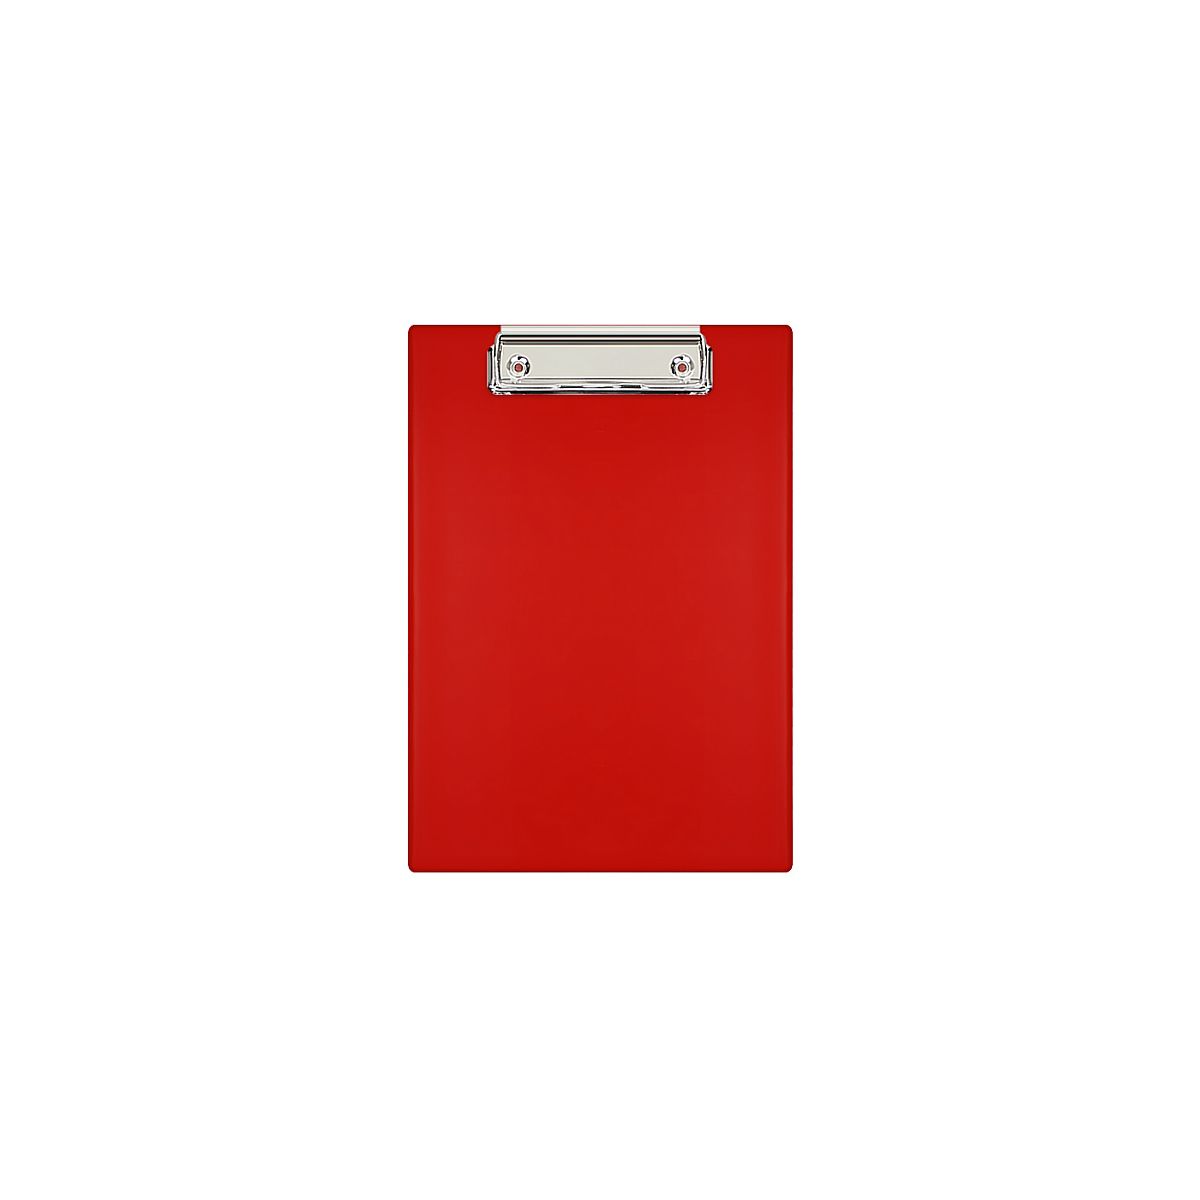 Deska z klipem (podkład do pisania) A5 czerwona Biurfol (KH-00-04)